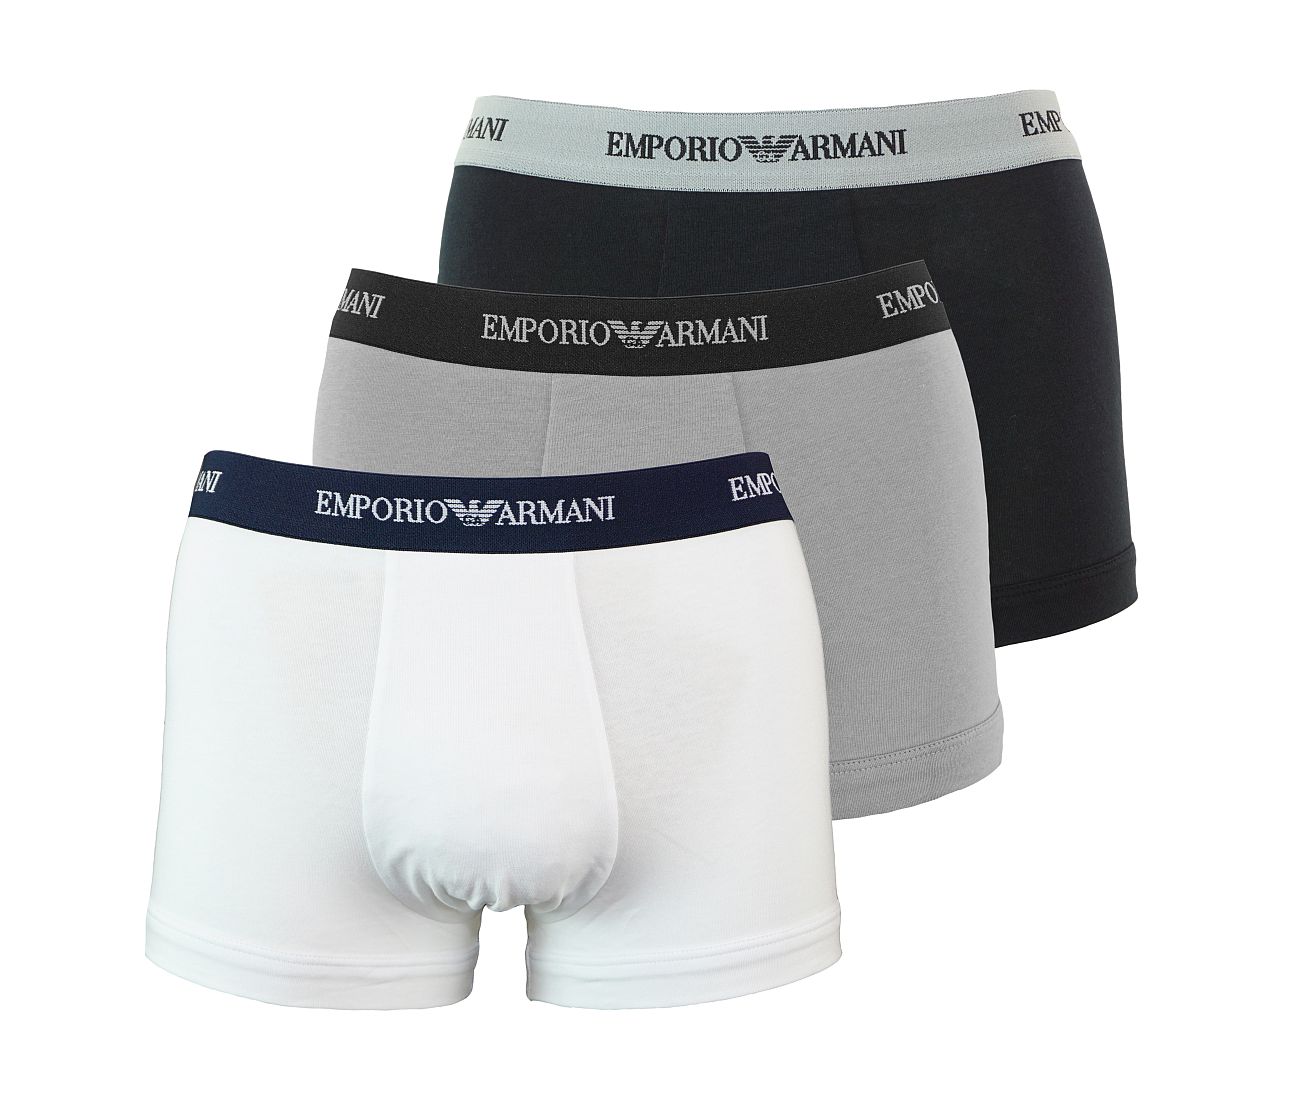 Emporio Armani 3er Pack Underwear Trunk Shorts Unterhose schwarz weiss grau 111357 CC717 02910